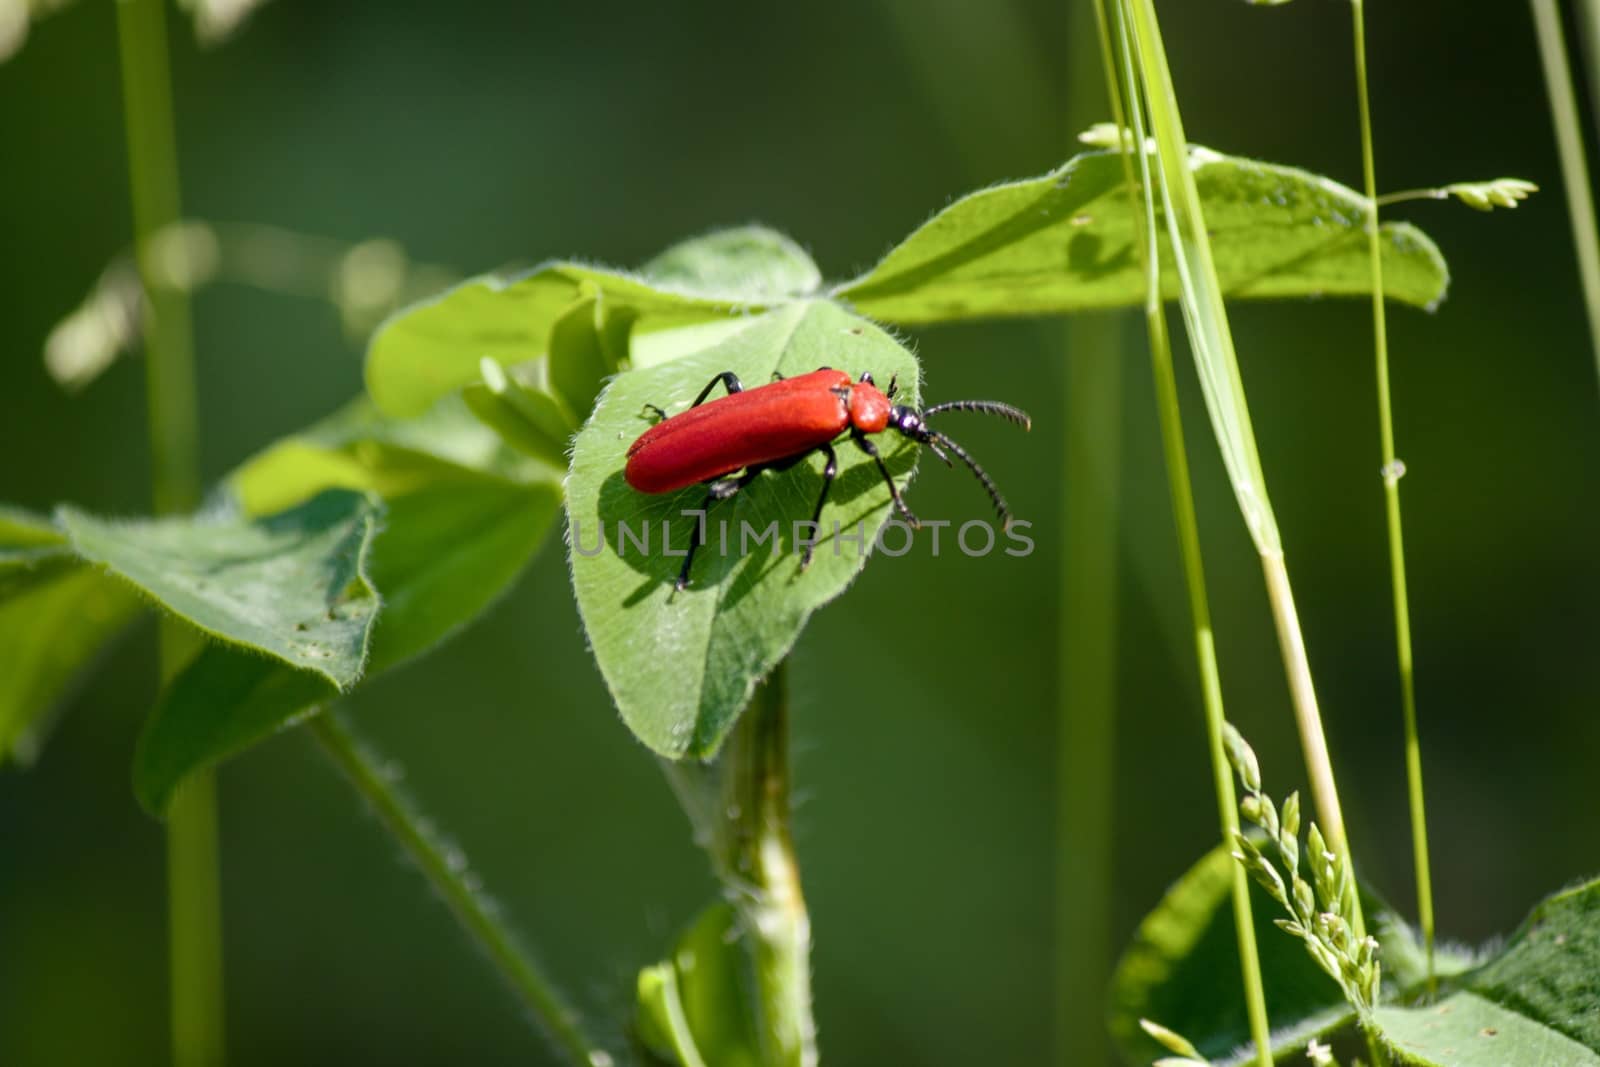 Redd bug on a leaf